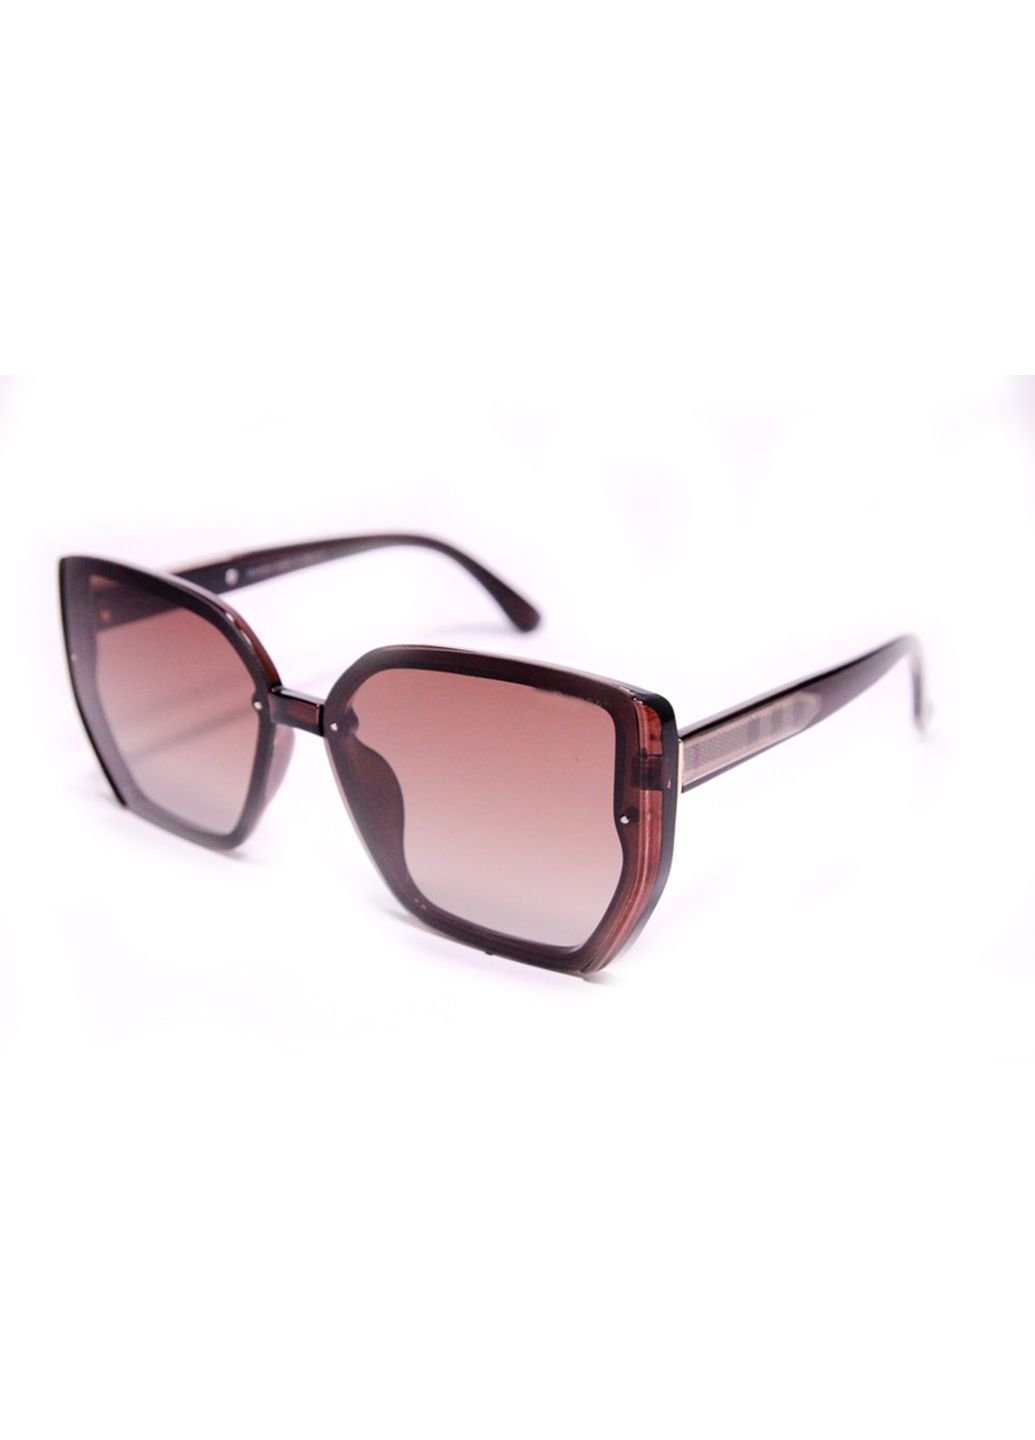 Купить Женские солнцезащитные очки Merlini BVLP8703 100289 - Коричневый в интернет-магазине